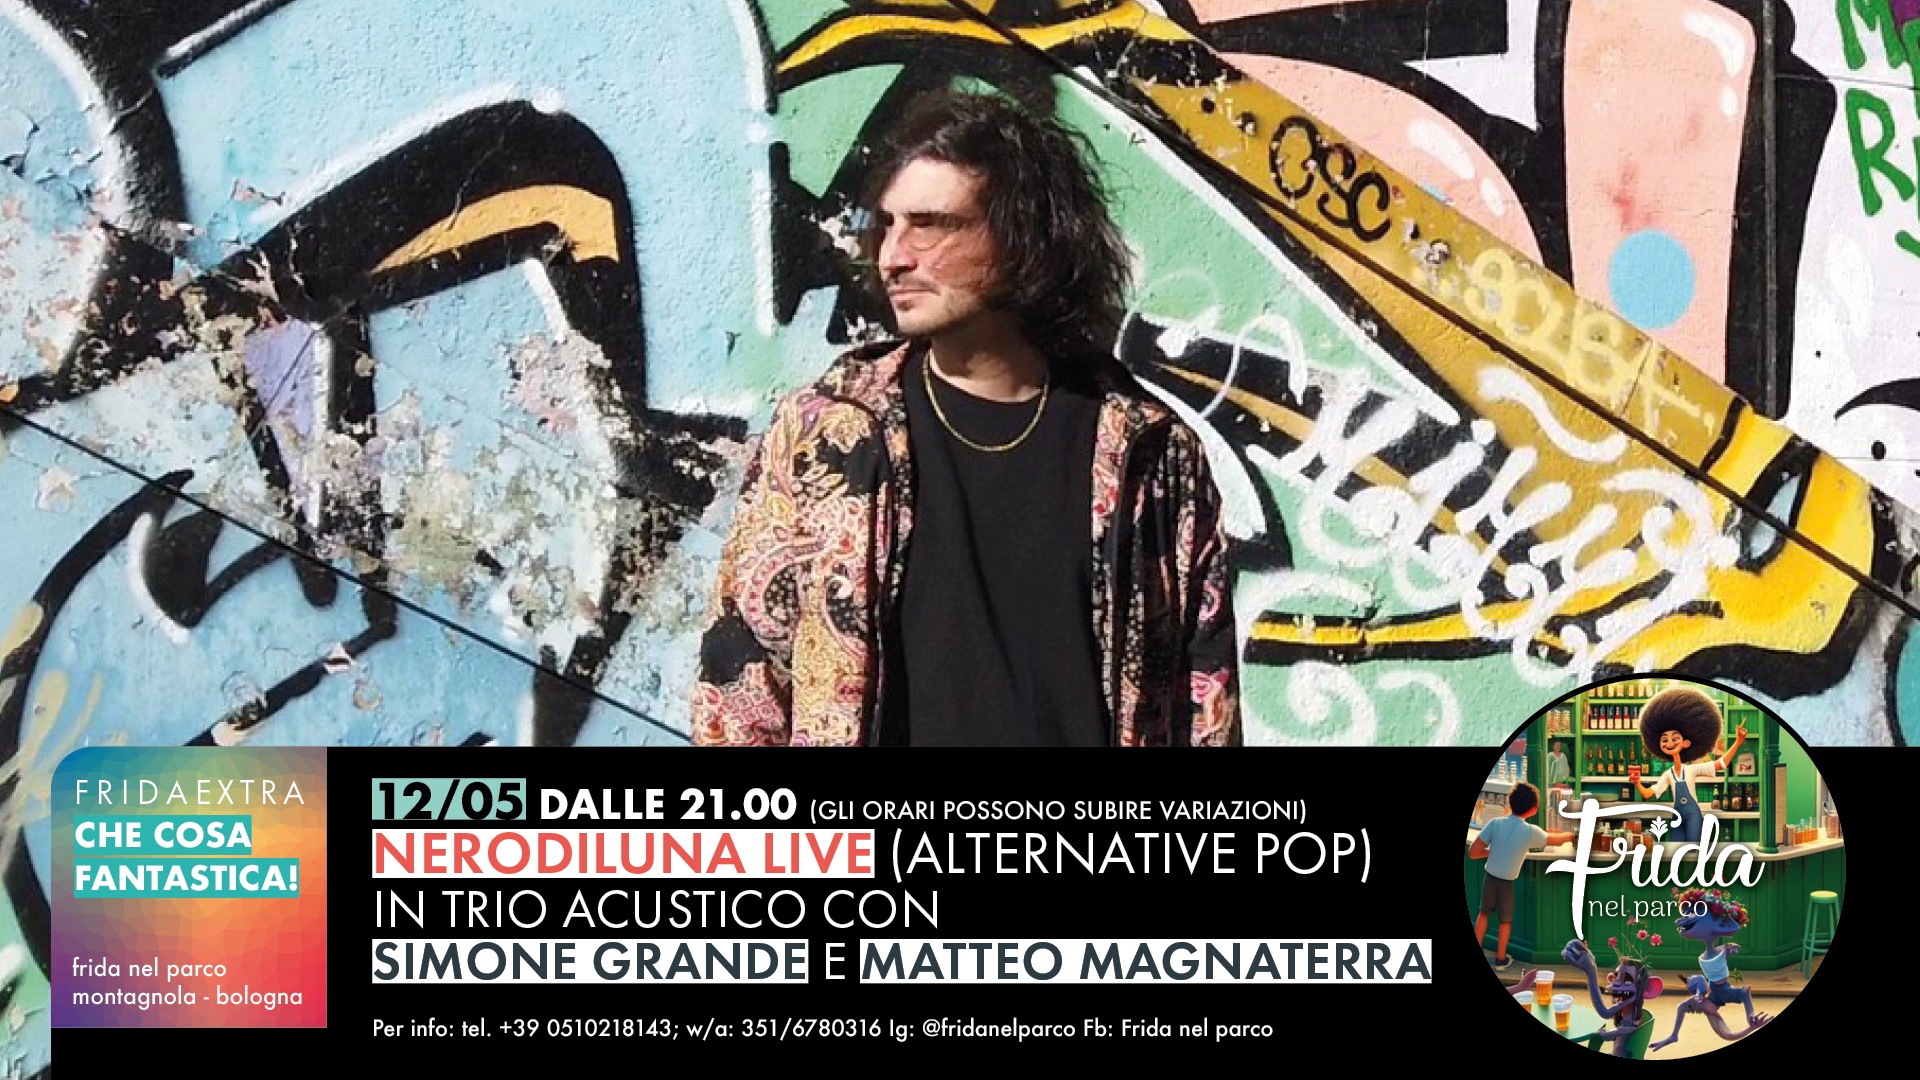 Nerodiluna Live, in trio acustico con Simone Grande e Matteo Magnaterra